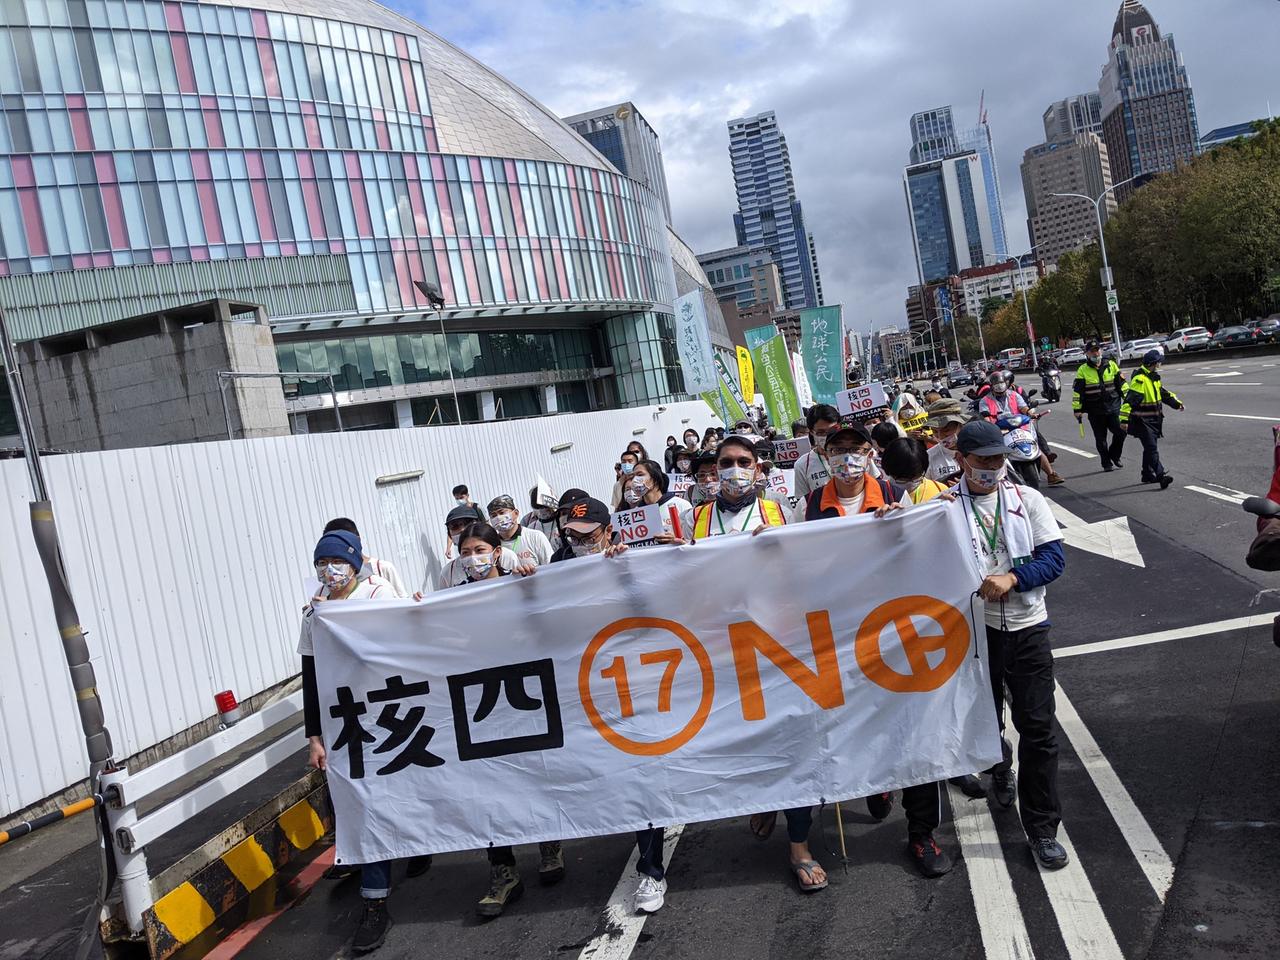 Eine Demonstration mit wenigen Dutzend Teilnehmern zieht durch eine breite Straße in Taiwan. In der ersten Reihe Demonstrierende mit einem großen weißen Transparent.